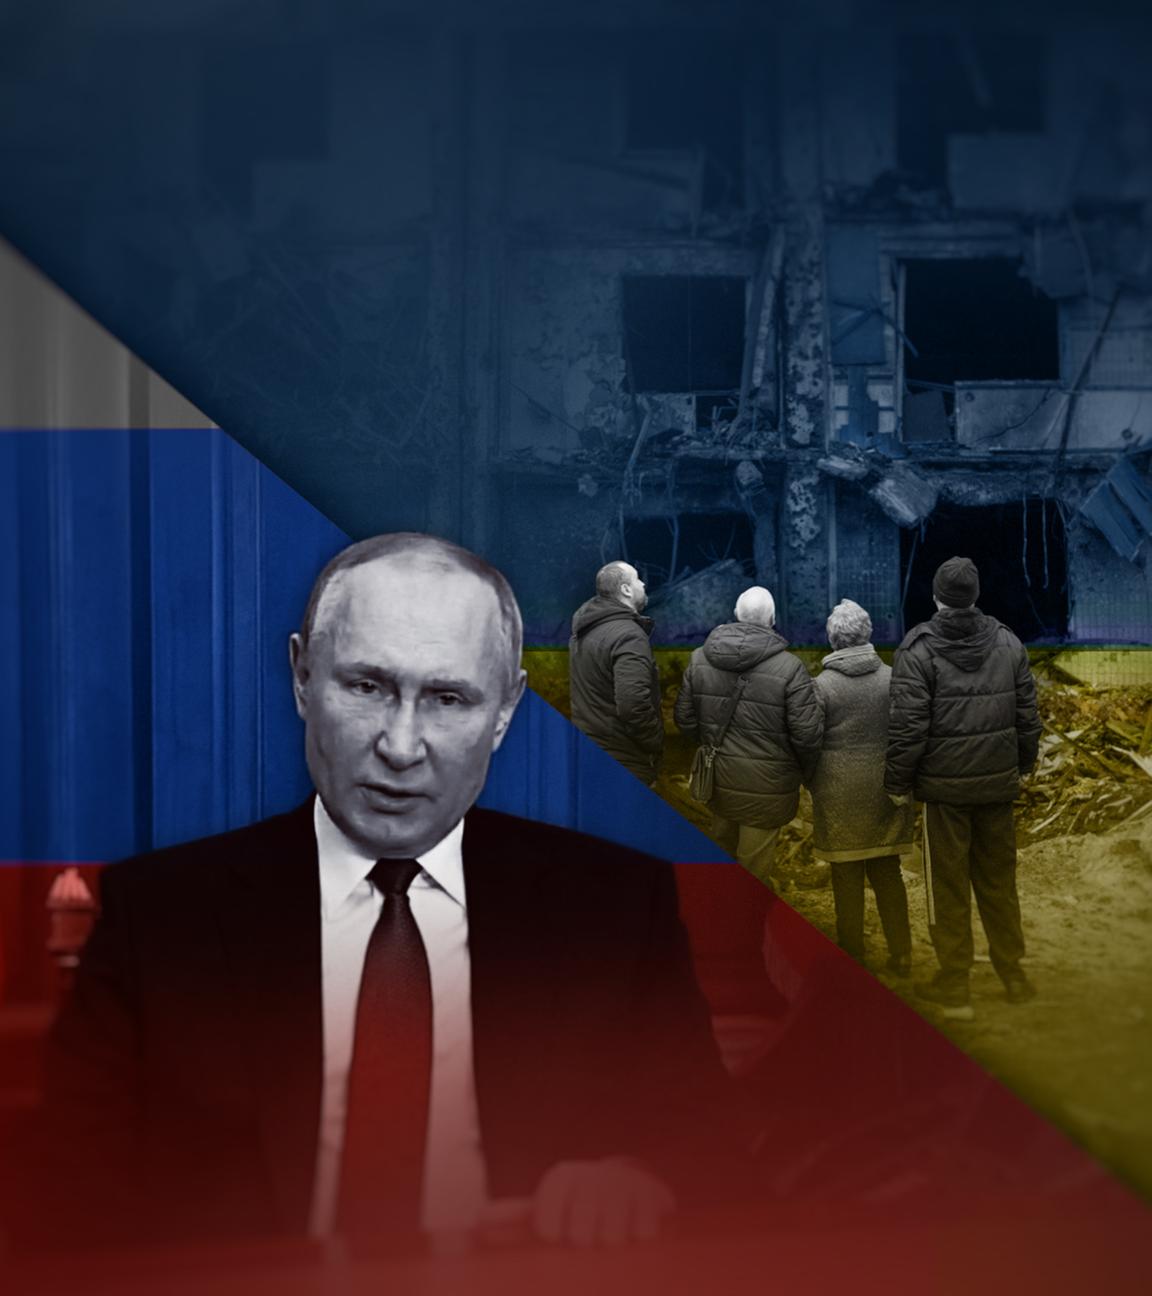 Die Montage zeigt in der linken Bildhälfte Russlands Präsidenten Wladimir Putin vor russischer Flagge. In der rechten Bildhälfte sind mehrere Menschen zu sehen, die vor einer zerstörten Häuserfassade stehen. Die rechte Hälfte ist in die Farben der ukrainischen Flagge getaucht.